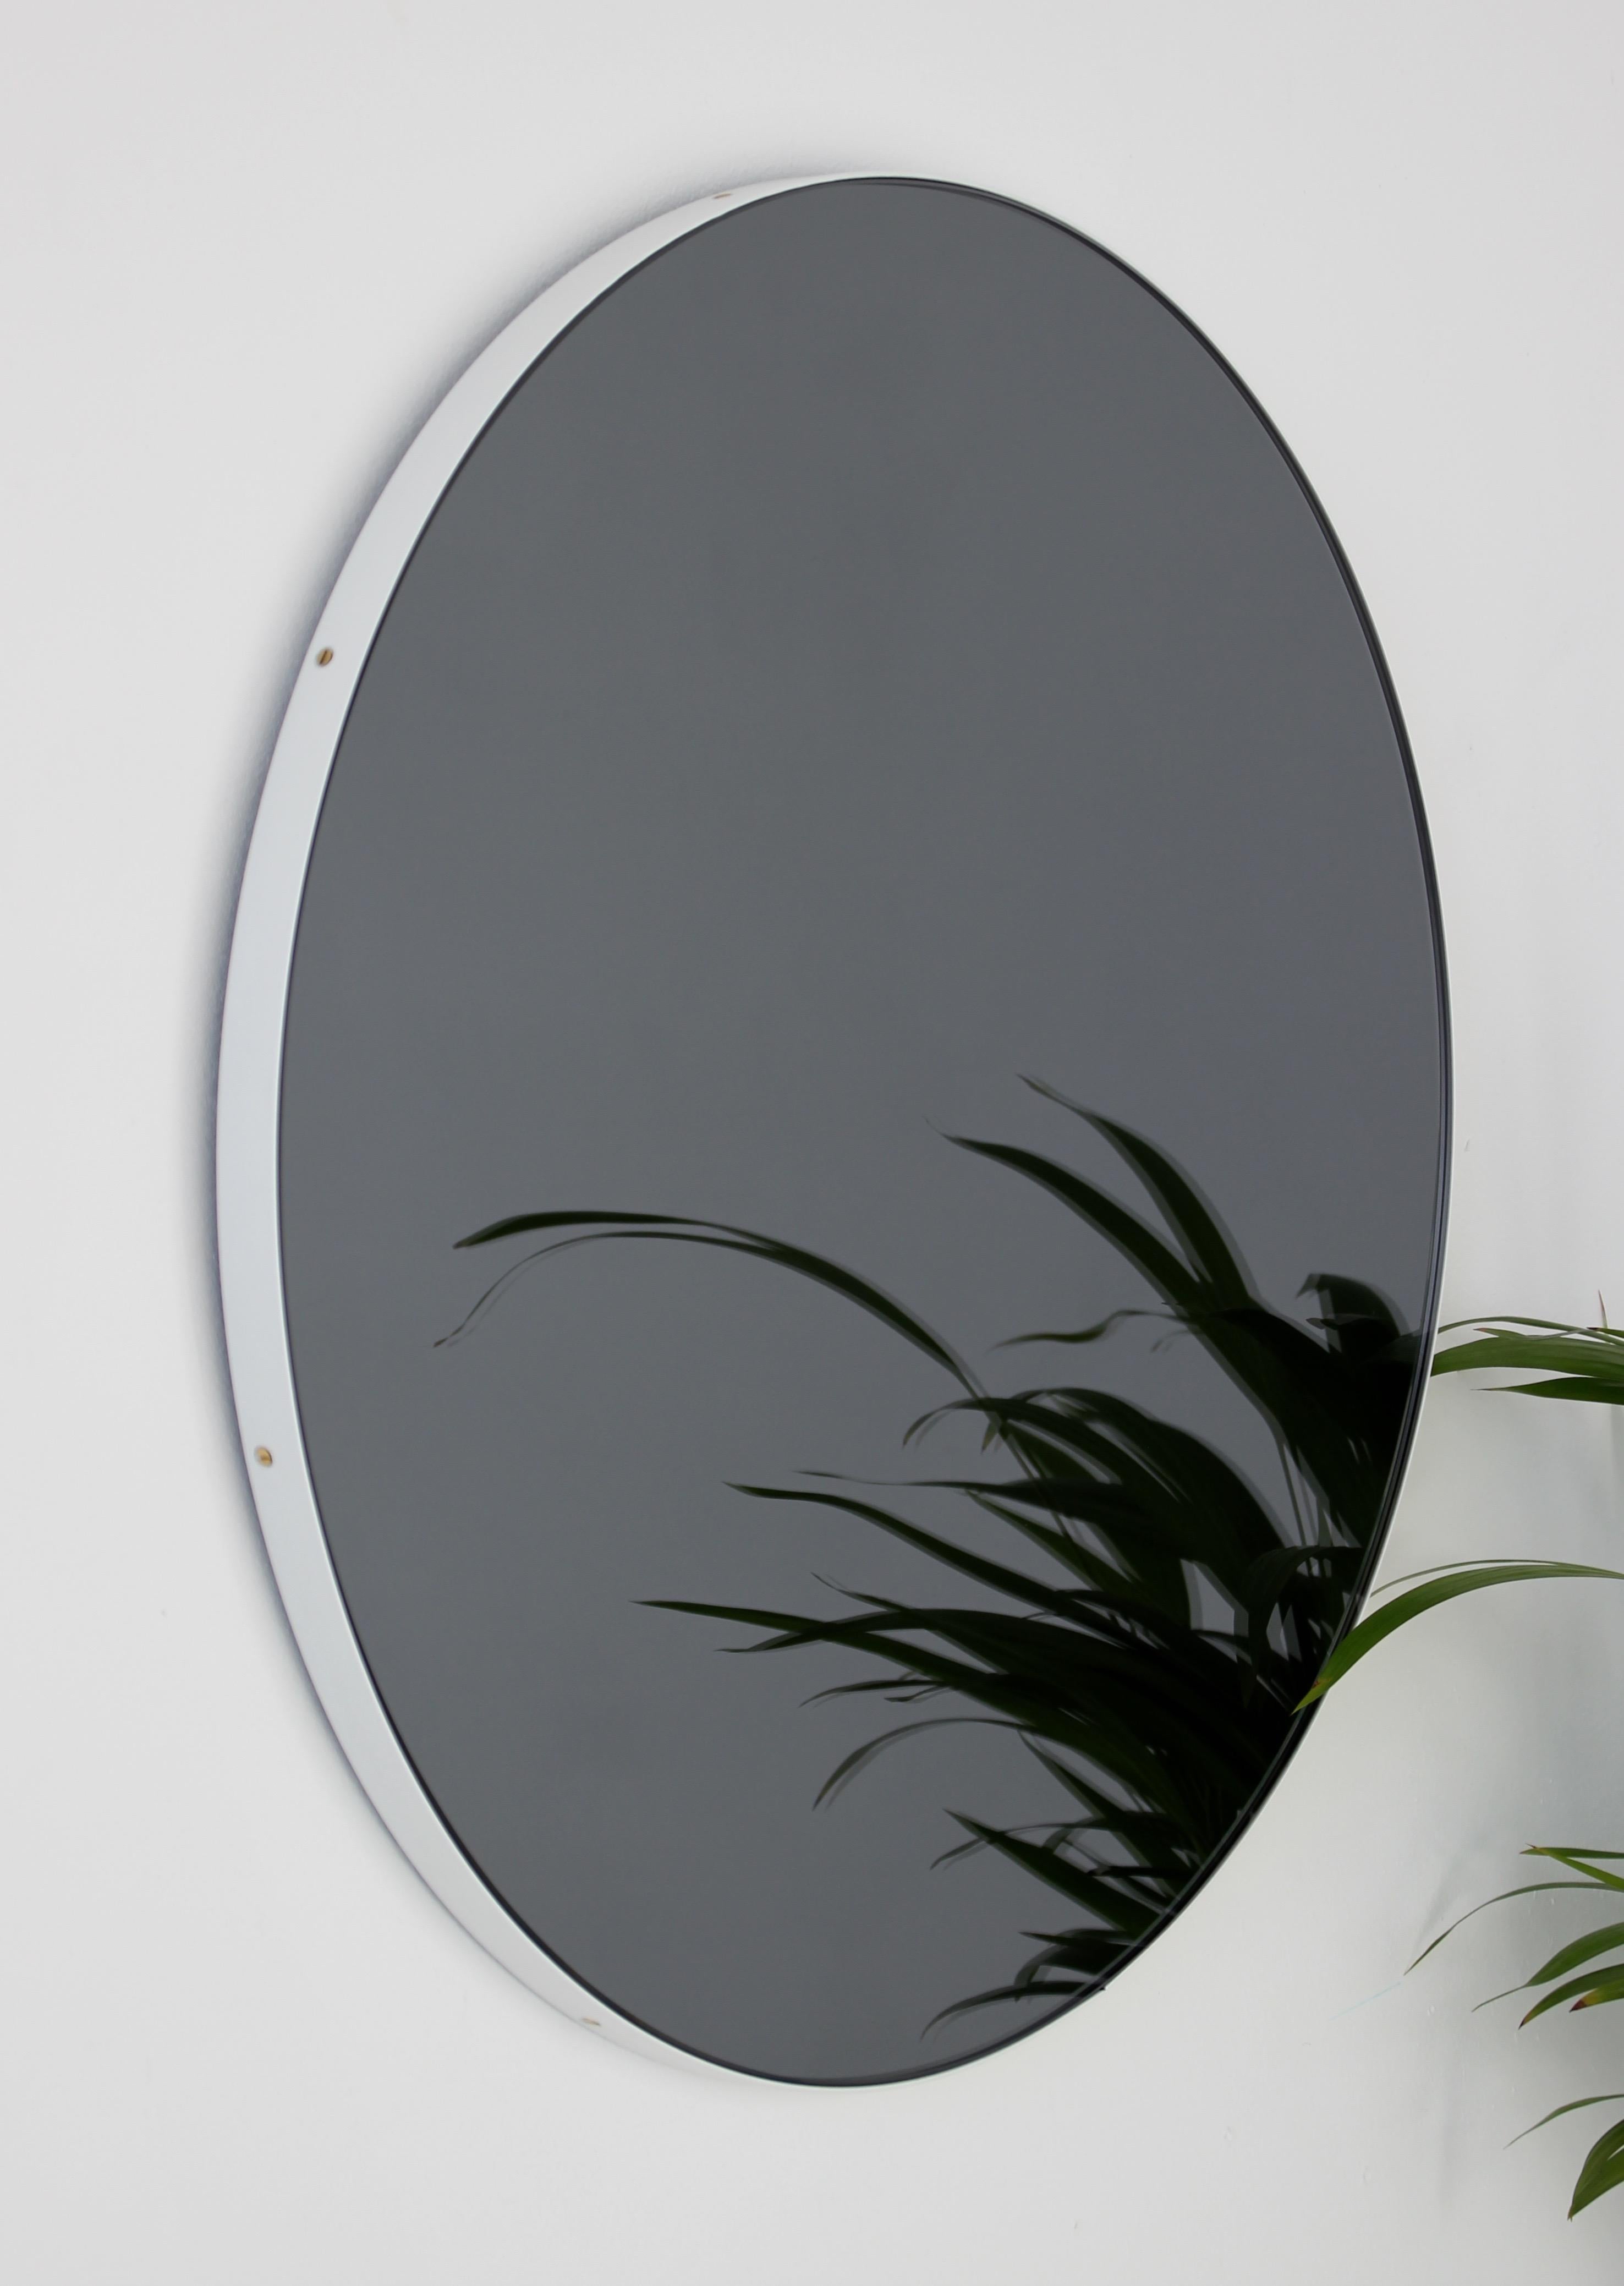 British Orbis Round Black Tinted Modern Art Deco Mirror with White Frame - Oversized